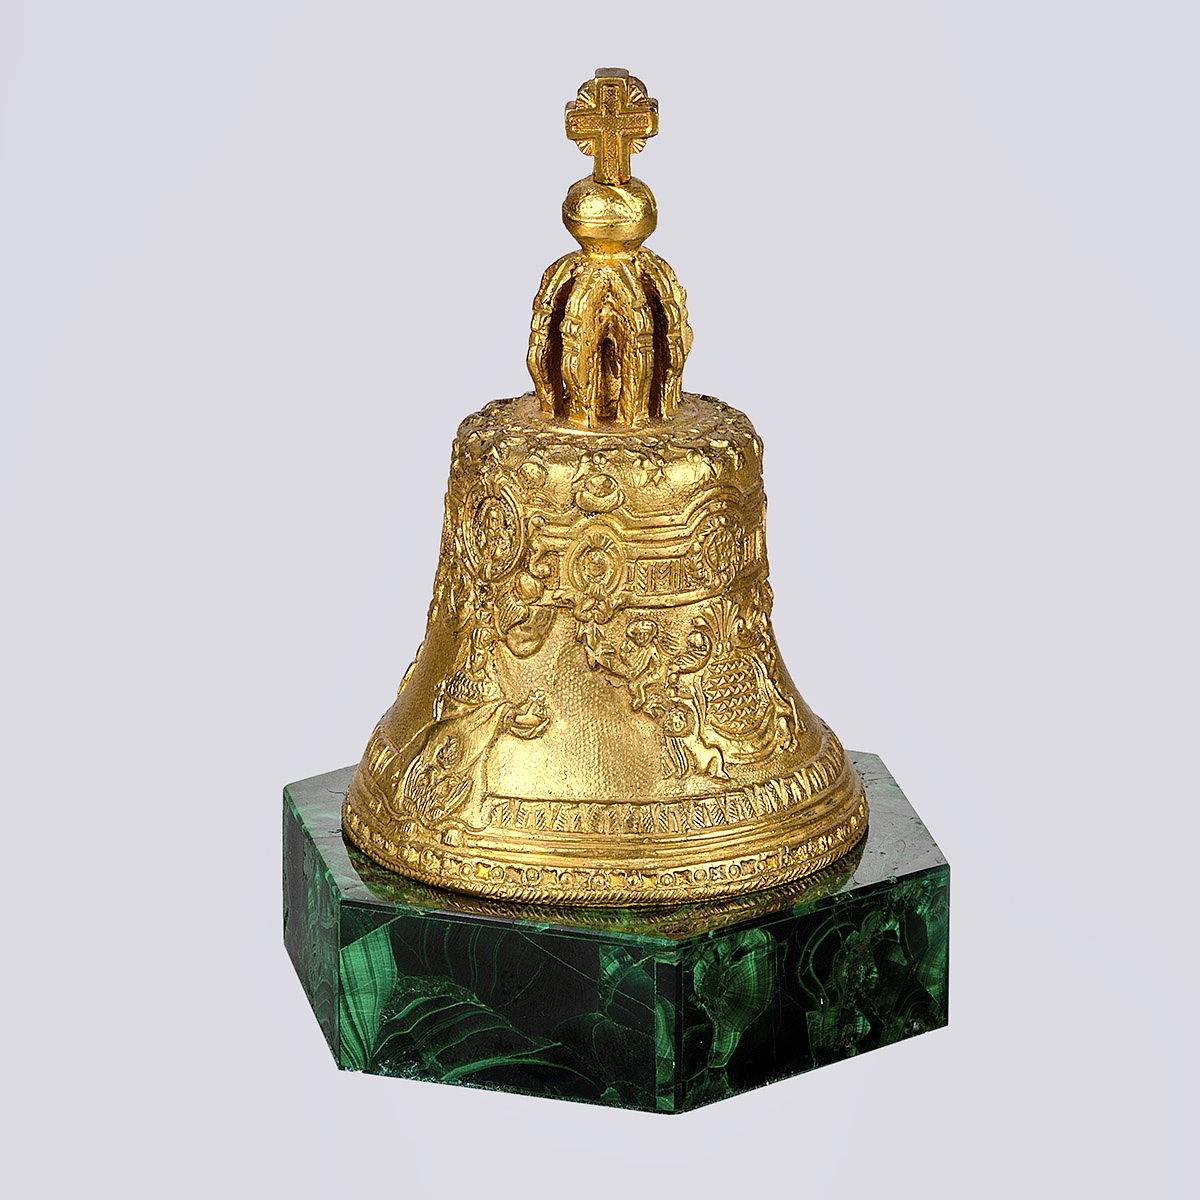 Кабинетное украшение «Колокол» из бронзы на малахитовой подставке 19 века (Густав Шмидт-Кассель, Российская Империя)